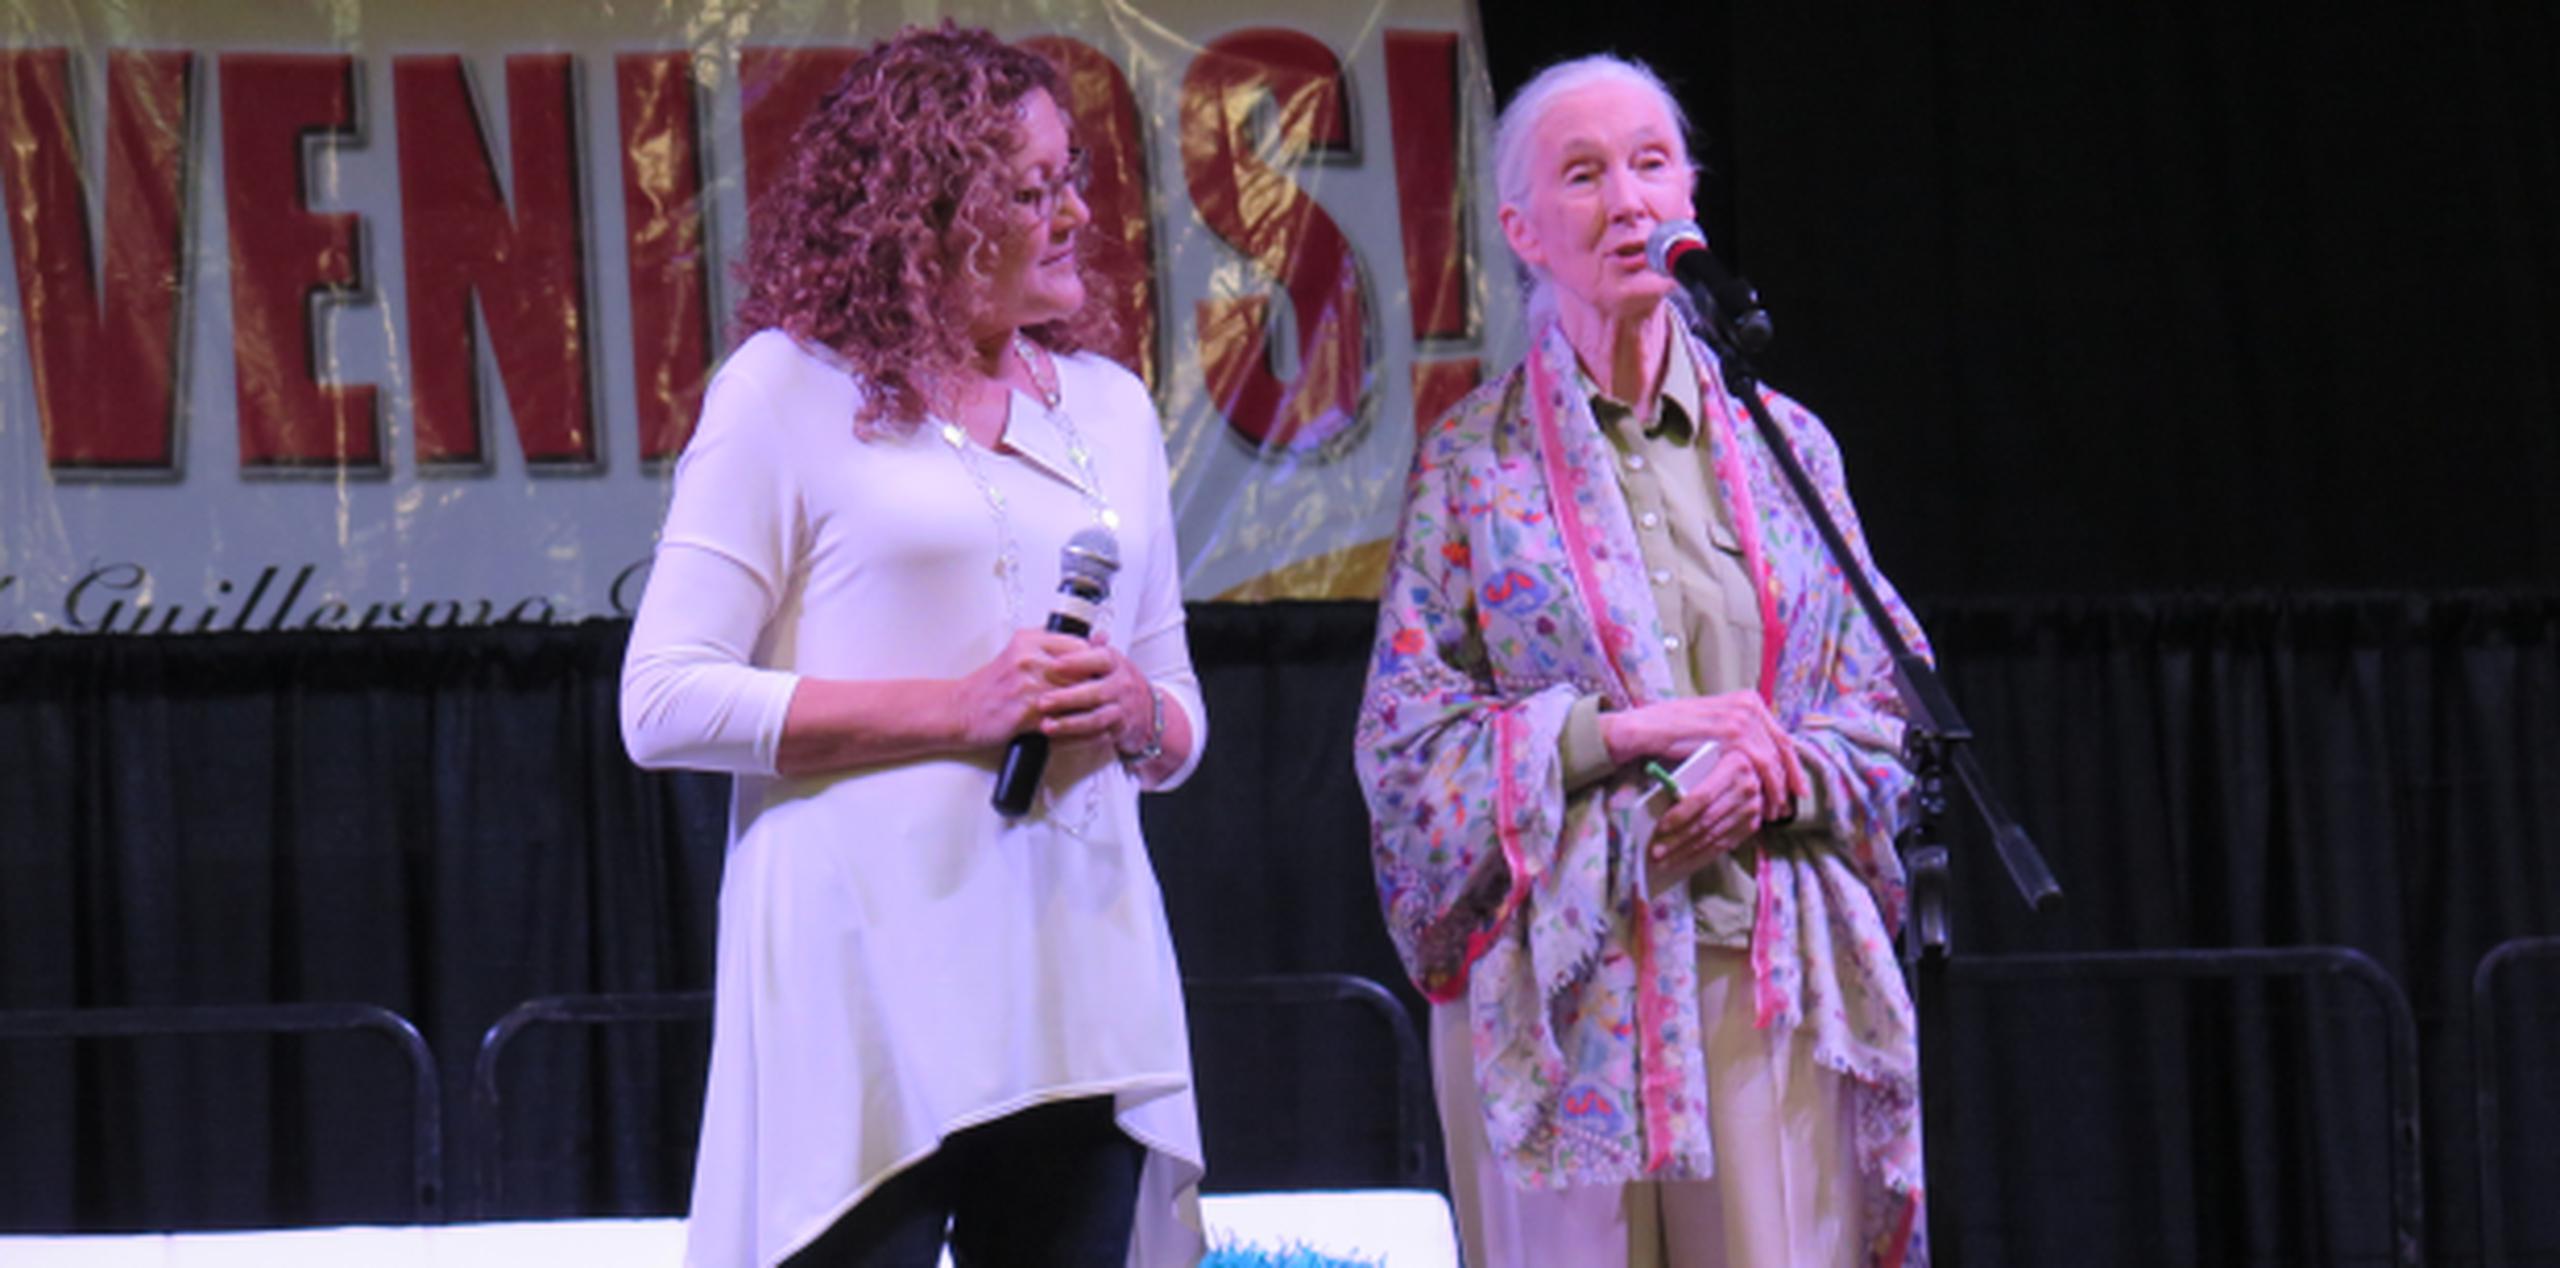 Jane Goodall cautivó a más de dos mil personas registradas en la conferencia We can't Wait for Environmental Education, auspiciada por el municipio de Mayagüez y celebrada en el Palacio de Recreación y Deportes.
(daileen.rodriguez@gfrmedia.com)